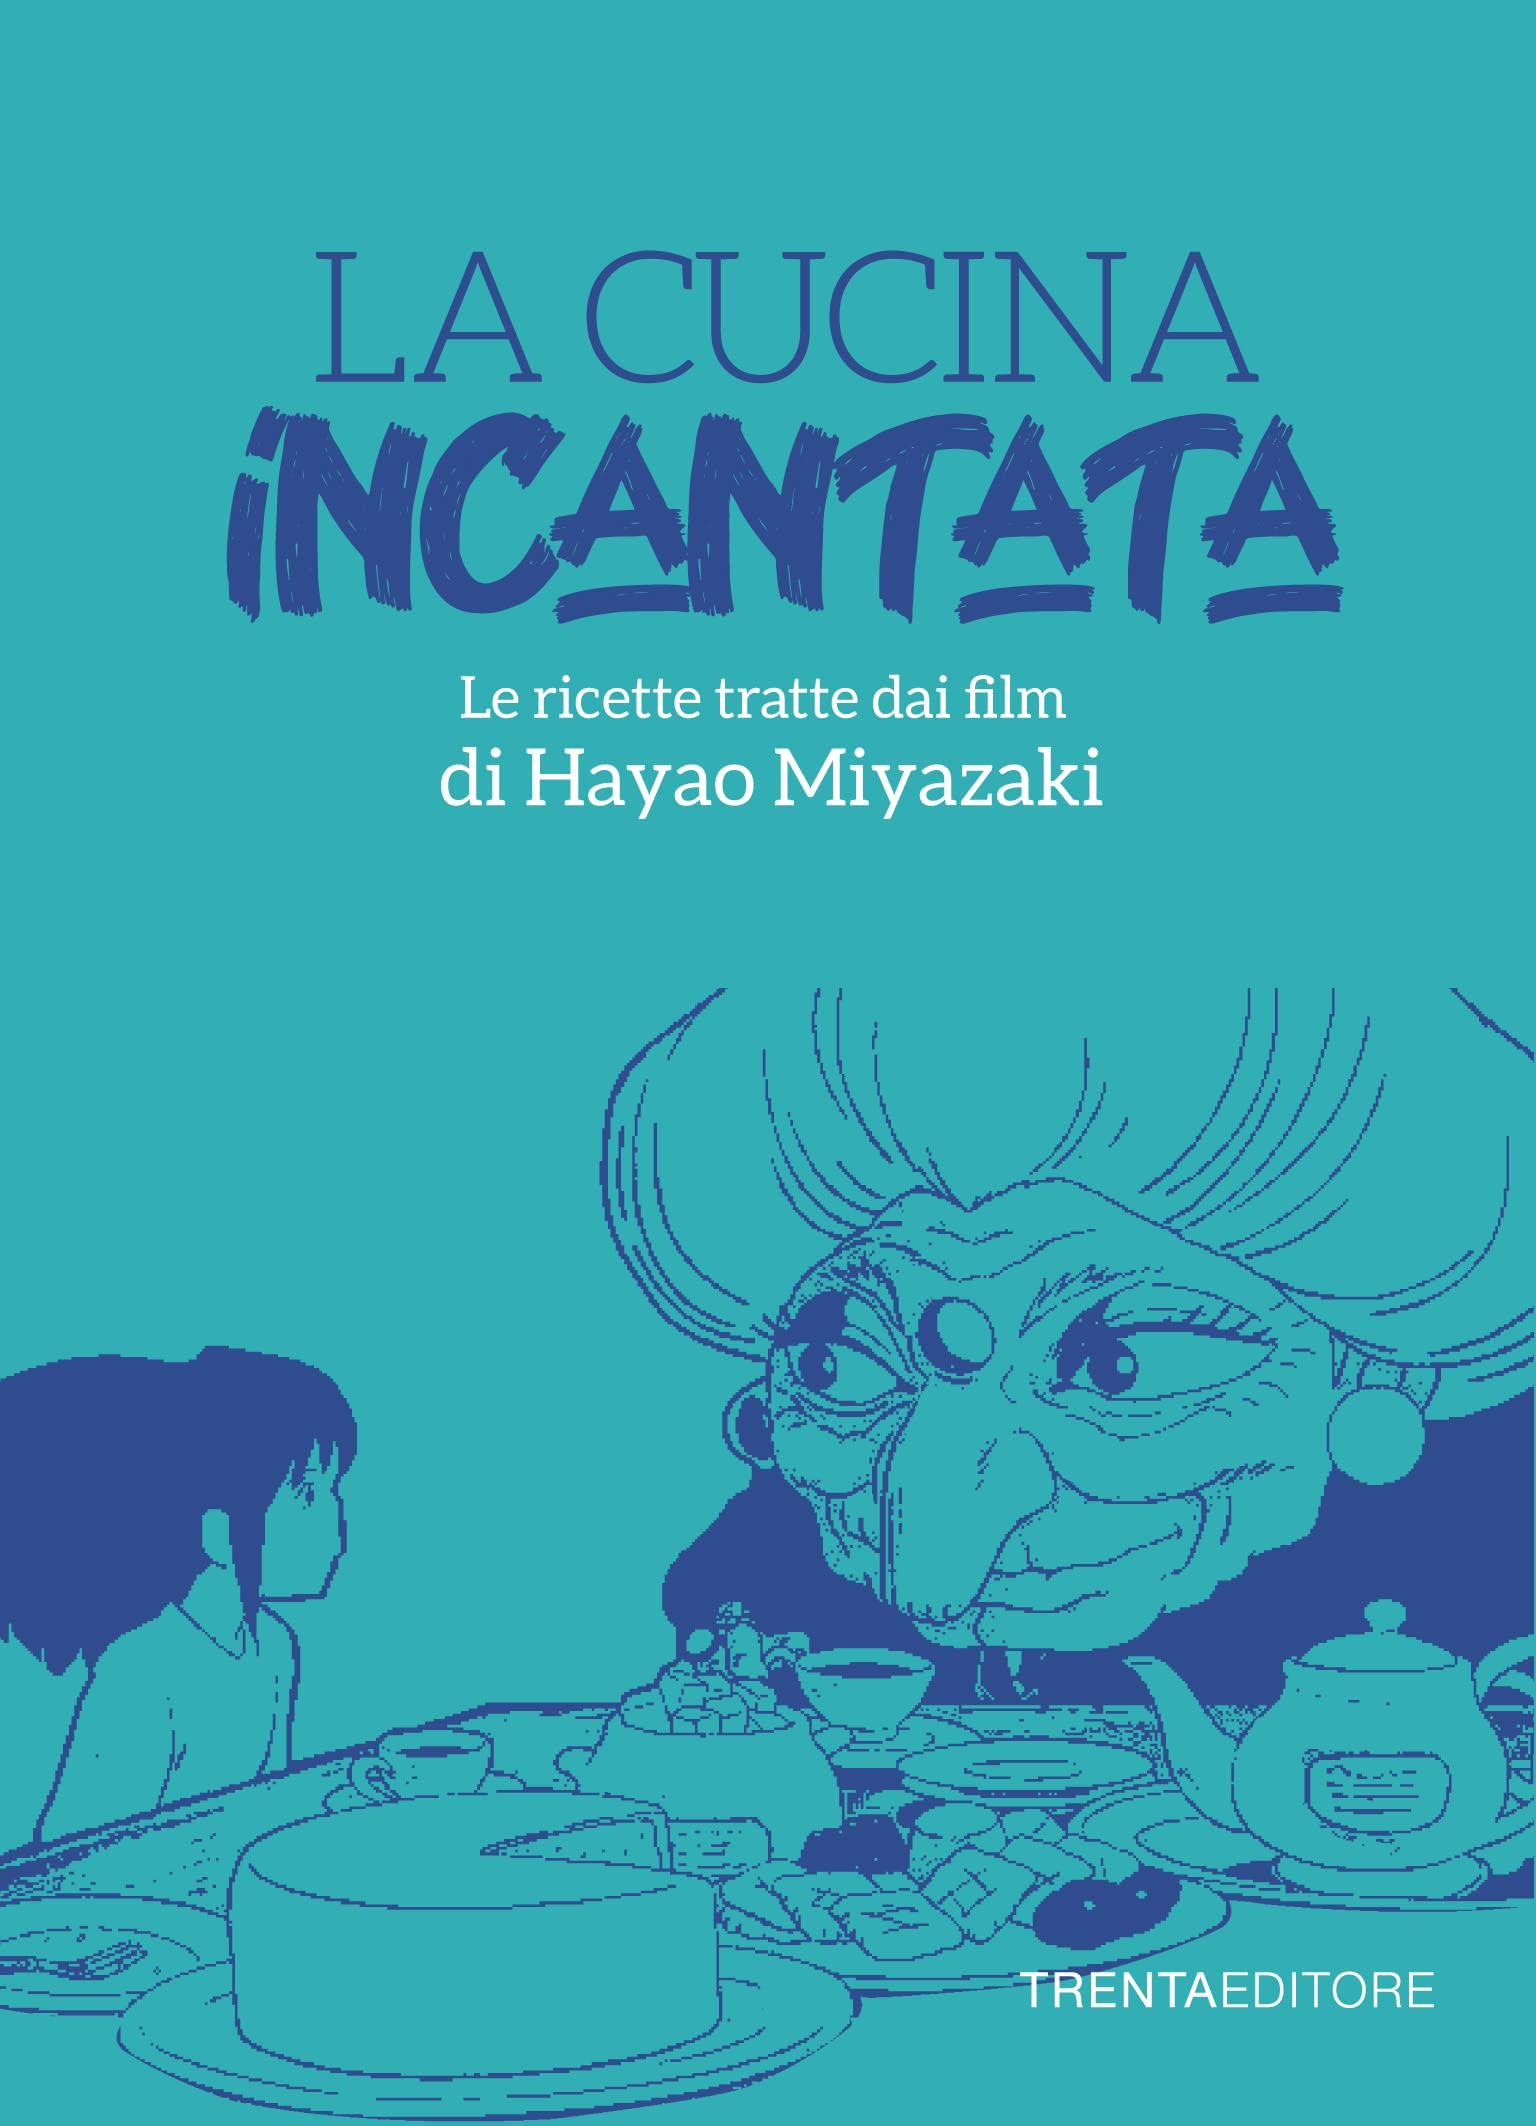 La cucina incantata: Le ricette tratte dai film di Hayao Miyazaki (Italian Edition)